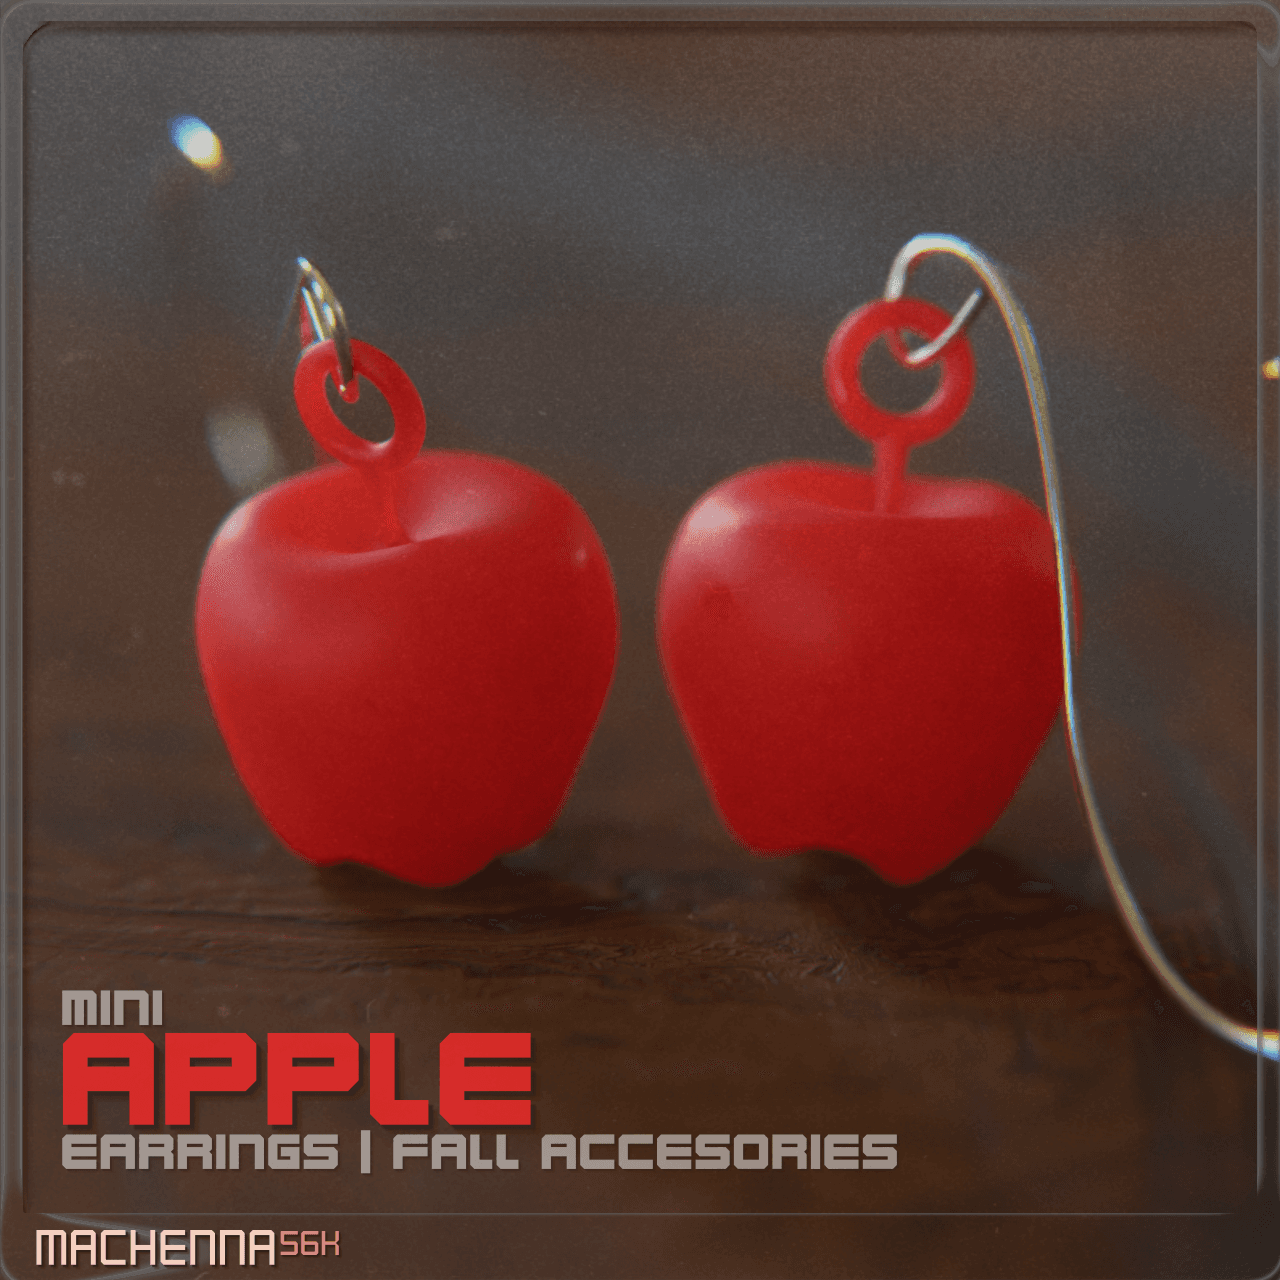 Mini Apple Earrings | Fall Accessories 3d model